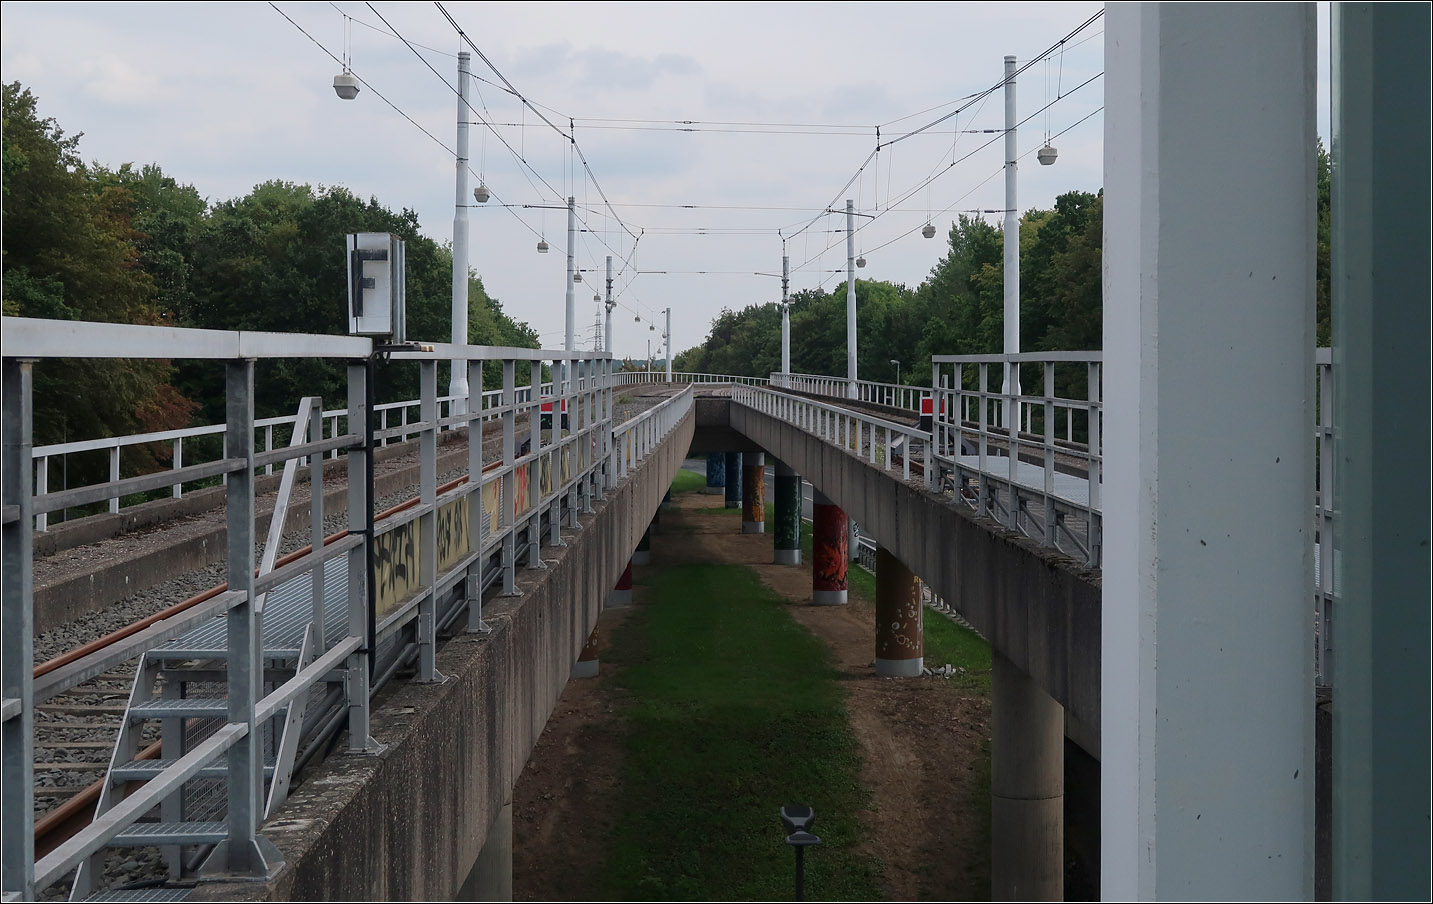 U35-Süd in Bochum - 

Für die Weiterführung der U35 über Heven nach Witten entstand im Anschluss an die Haltestelle Hustadt diese Brückenbauwerk, das die Stadtbahnstrecke über die südlichen Fahrspuren der Universitätsstraße hinweg geführt hätte. 
Aktueller sind Planungen für ein Verlängerung im Bogen um das Technologiequartier herum nach Südwest zur Hochschule Bochum. Auch die Möglichkeit der Weiterführung der U35 entlang der Universitätsstraße bis zur Straßenbahnstrecke der Linien 302, 305 und 310 im Bereich der Haltestelle Unterstraße wurde schon untersucht.

22.08.2023 (M)
